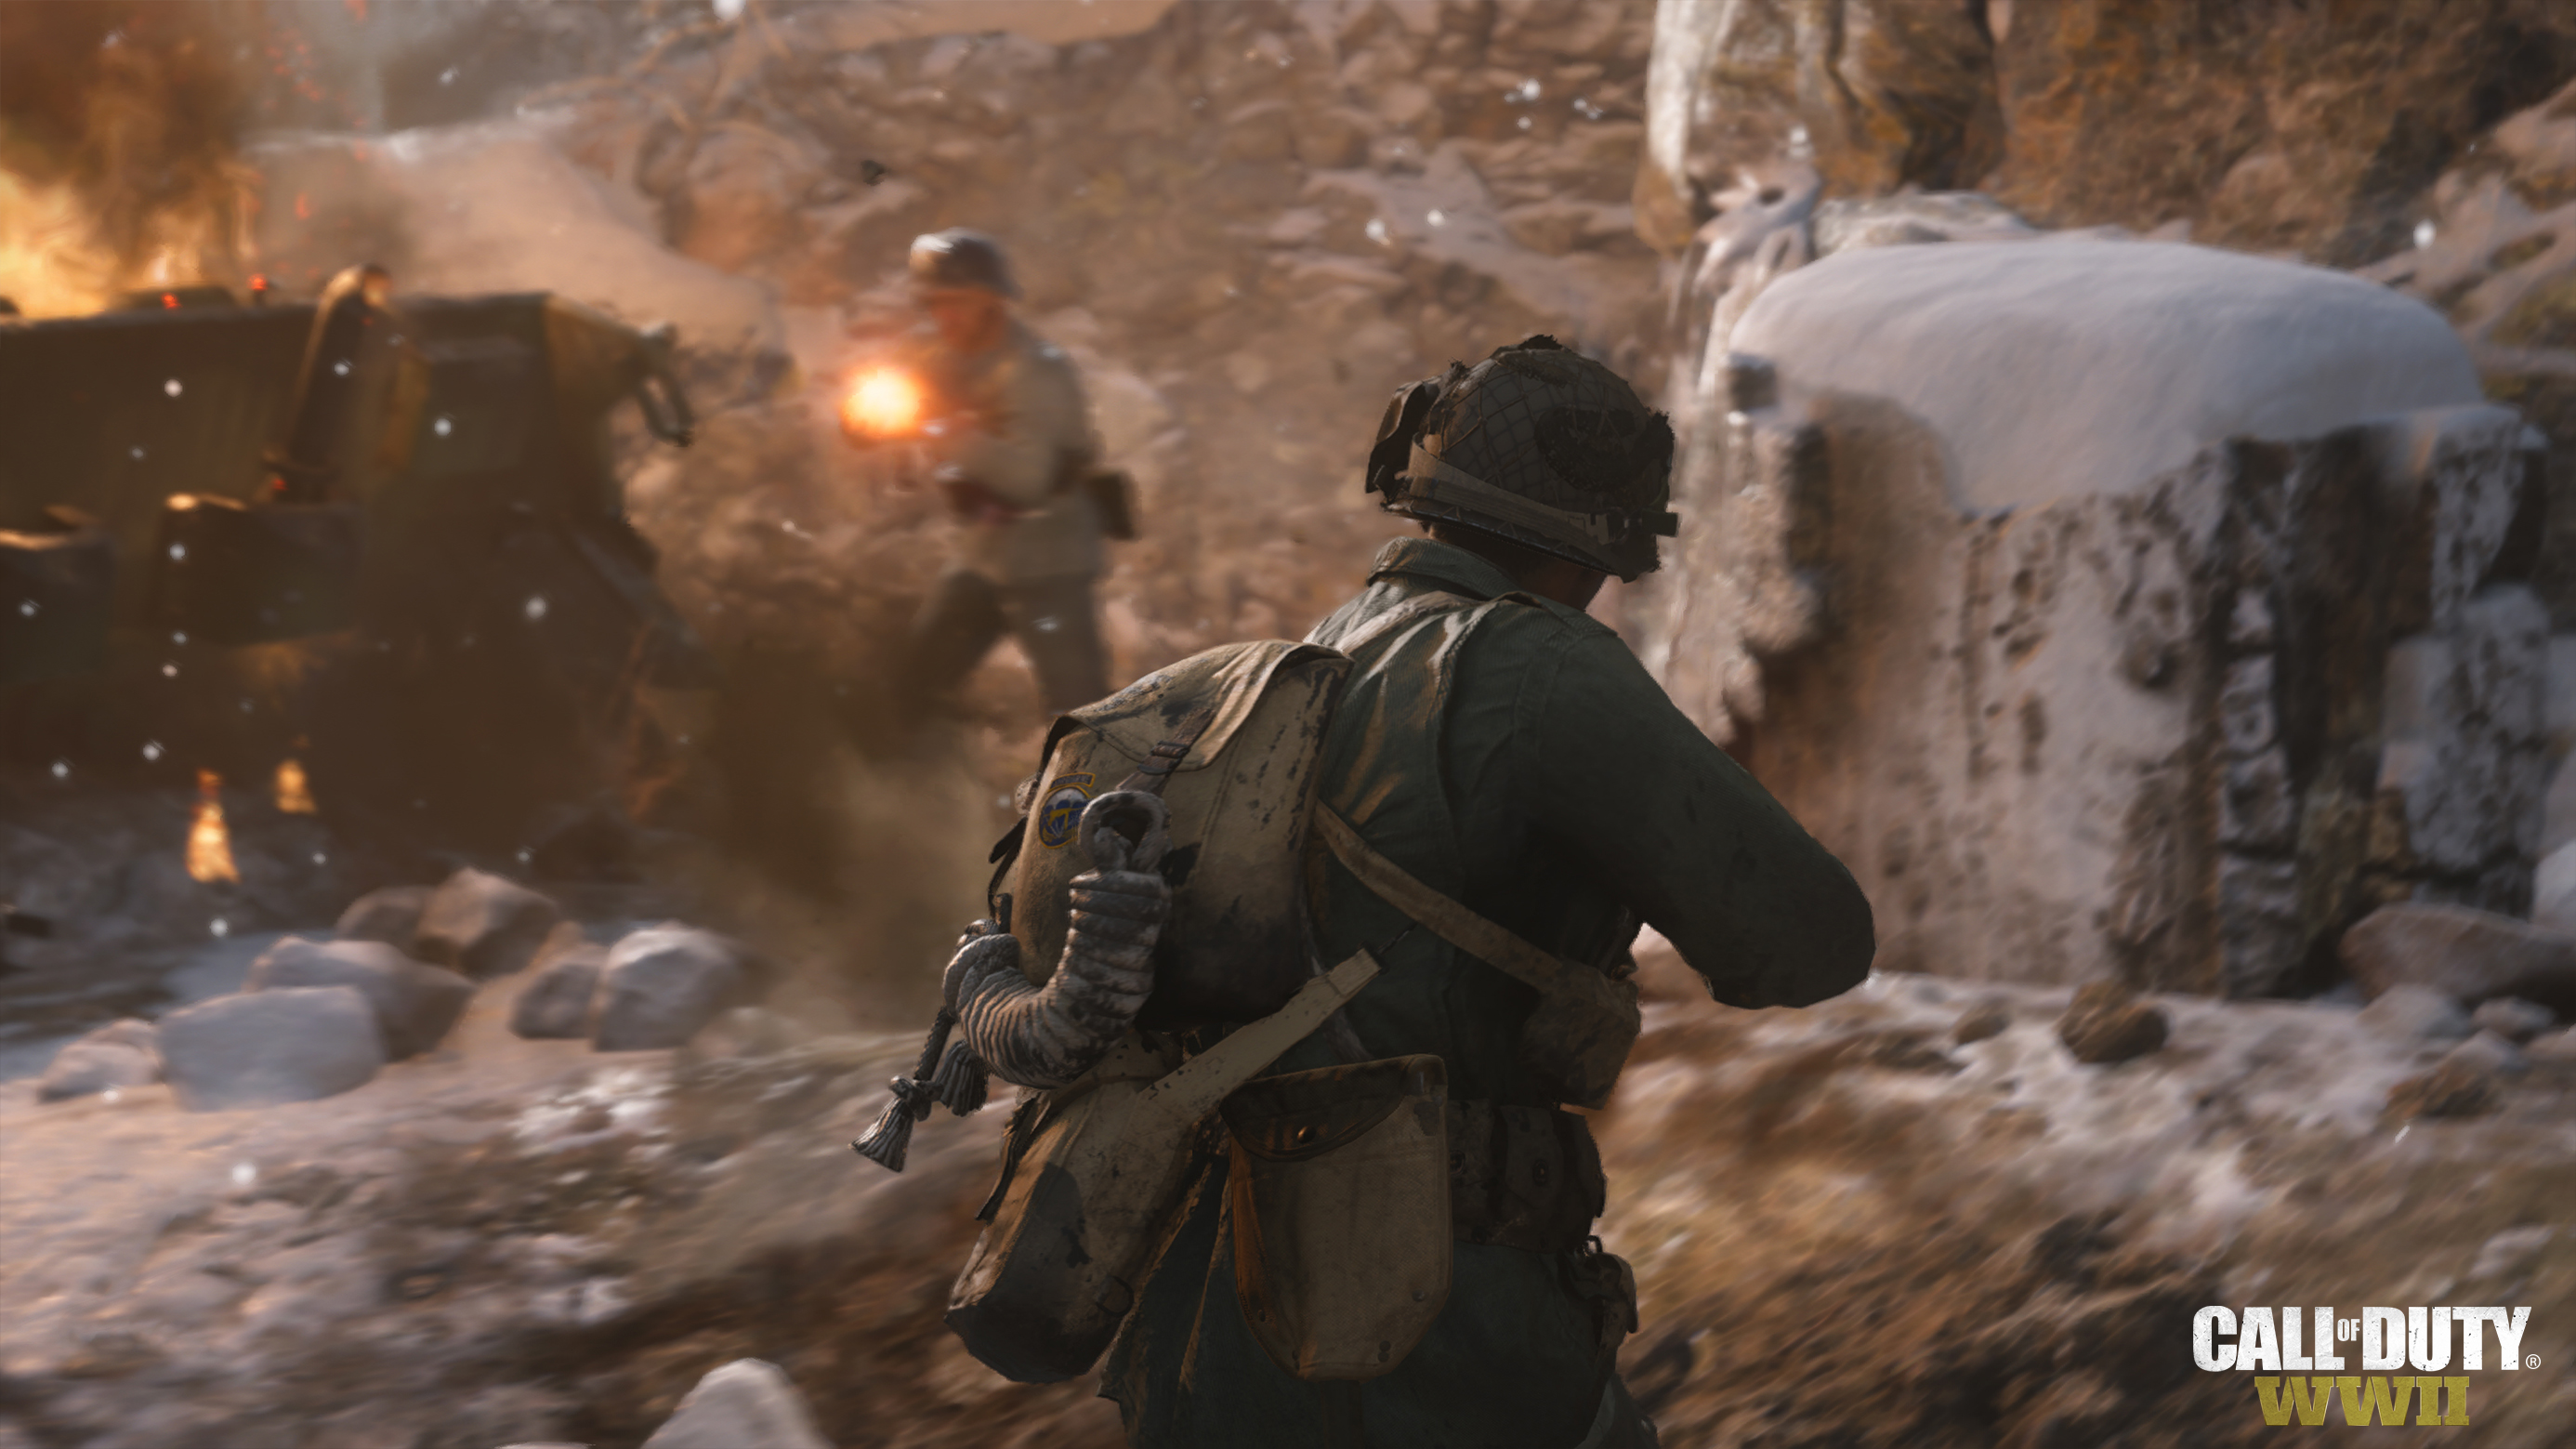 Immagine pubblicata in relazione al seguente contenuto: Activision pubblica nuovi trailer e screenshots dello shooter Call of Duty: WWII | Nome immagine: news26908_Call-of-Duty-WWII-Screenshot_3.jpg